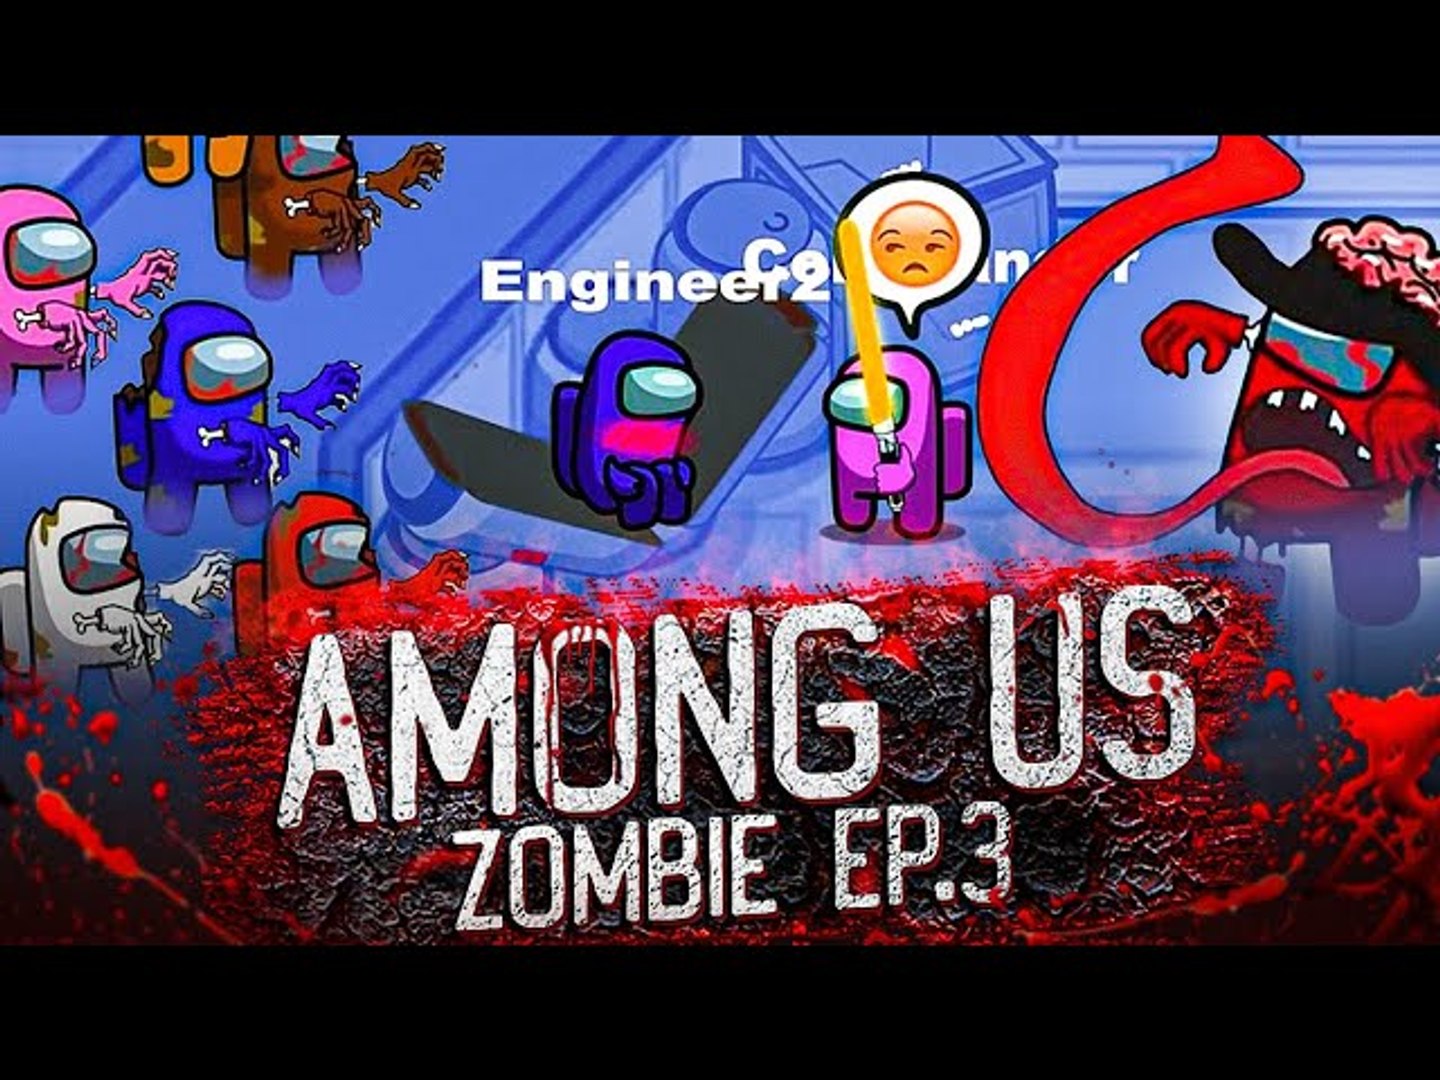 Among Us Zombie - Full Movie 2 ( Animation) Dank memes 